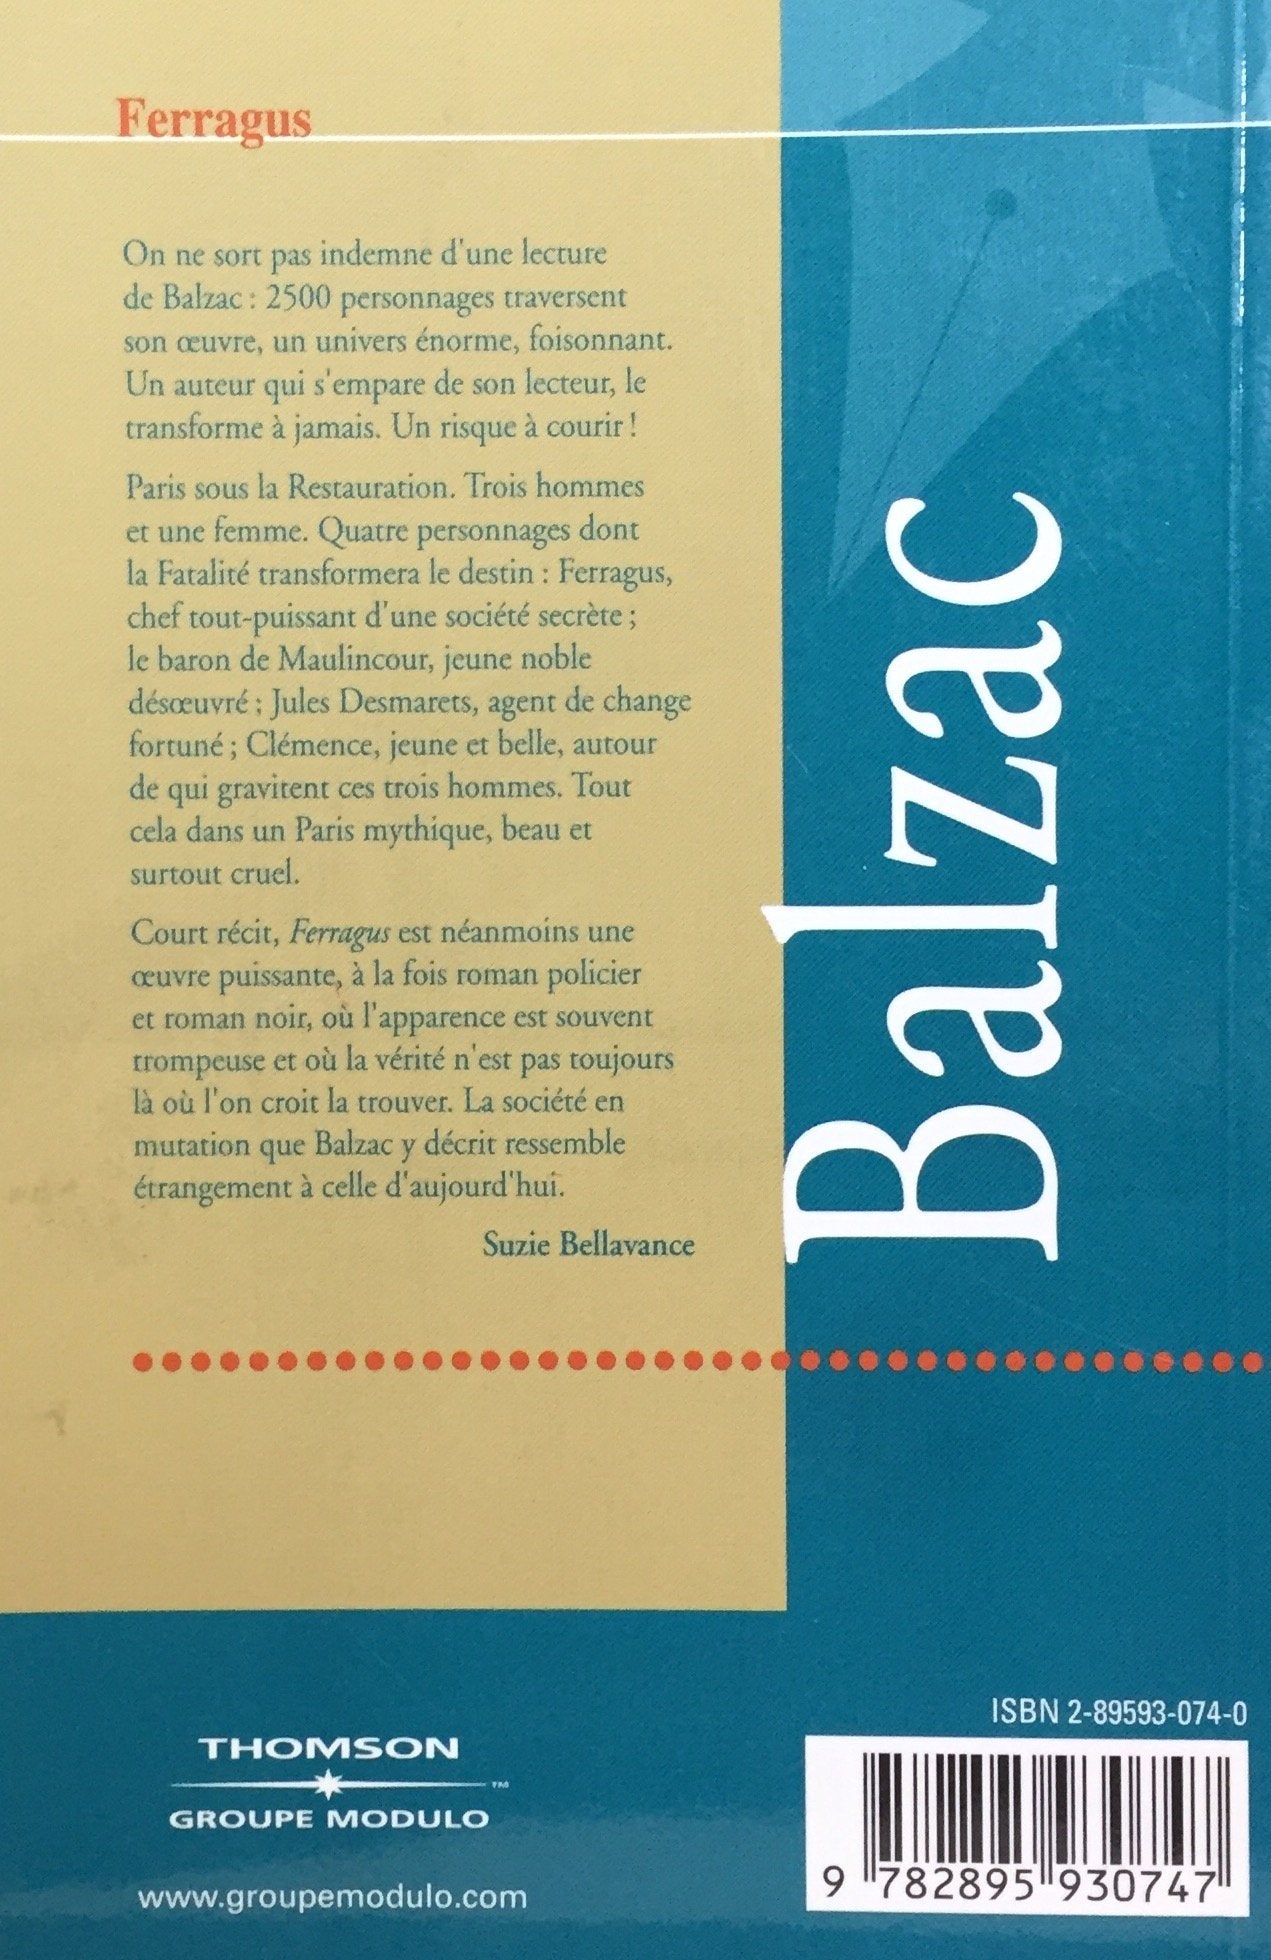 Bibliothèque La Lignée : Ferragus (Honoré de Balzac)